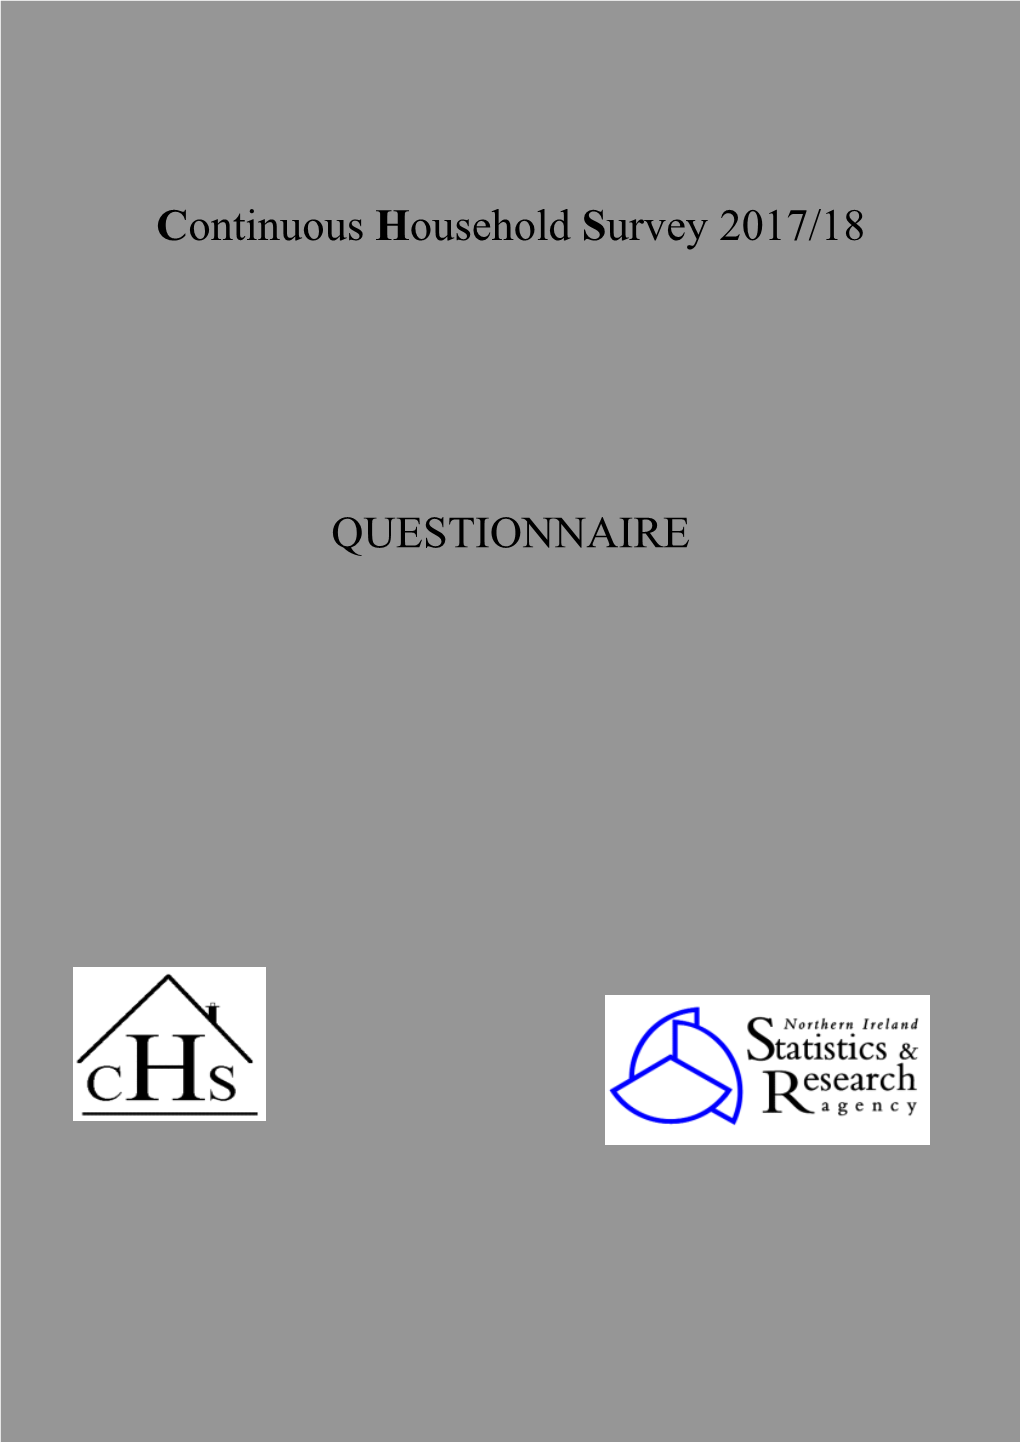 Continuous Household Survey Questionnaire 2017-18